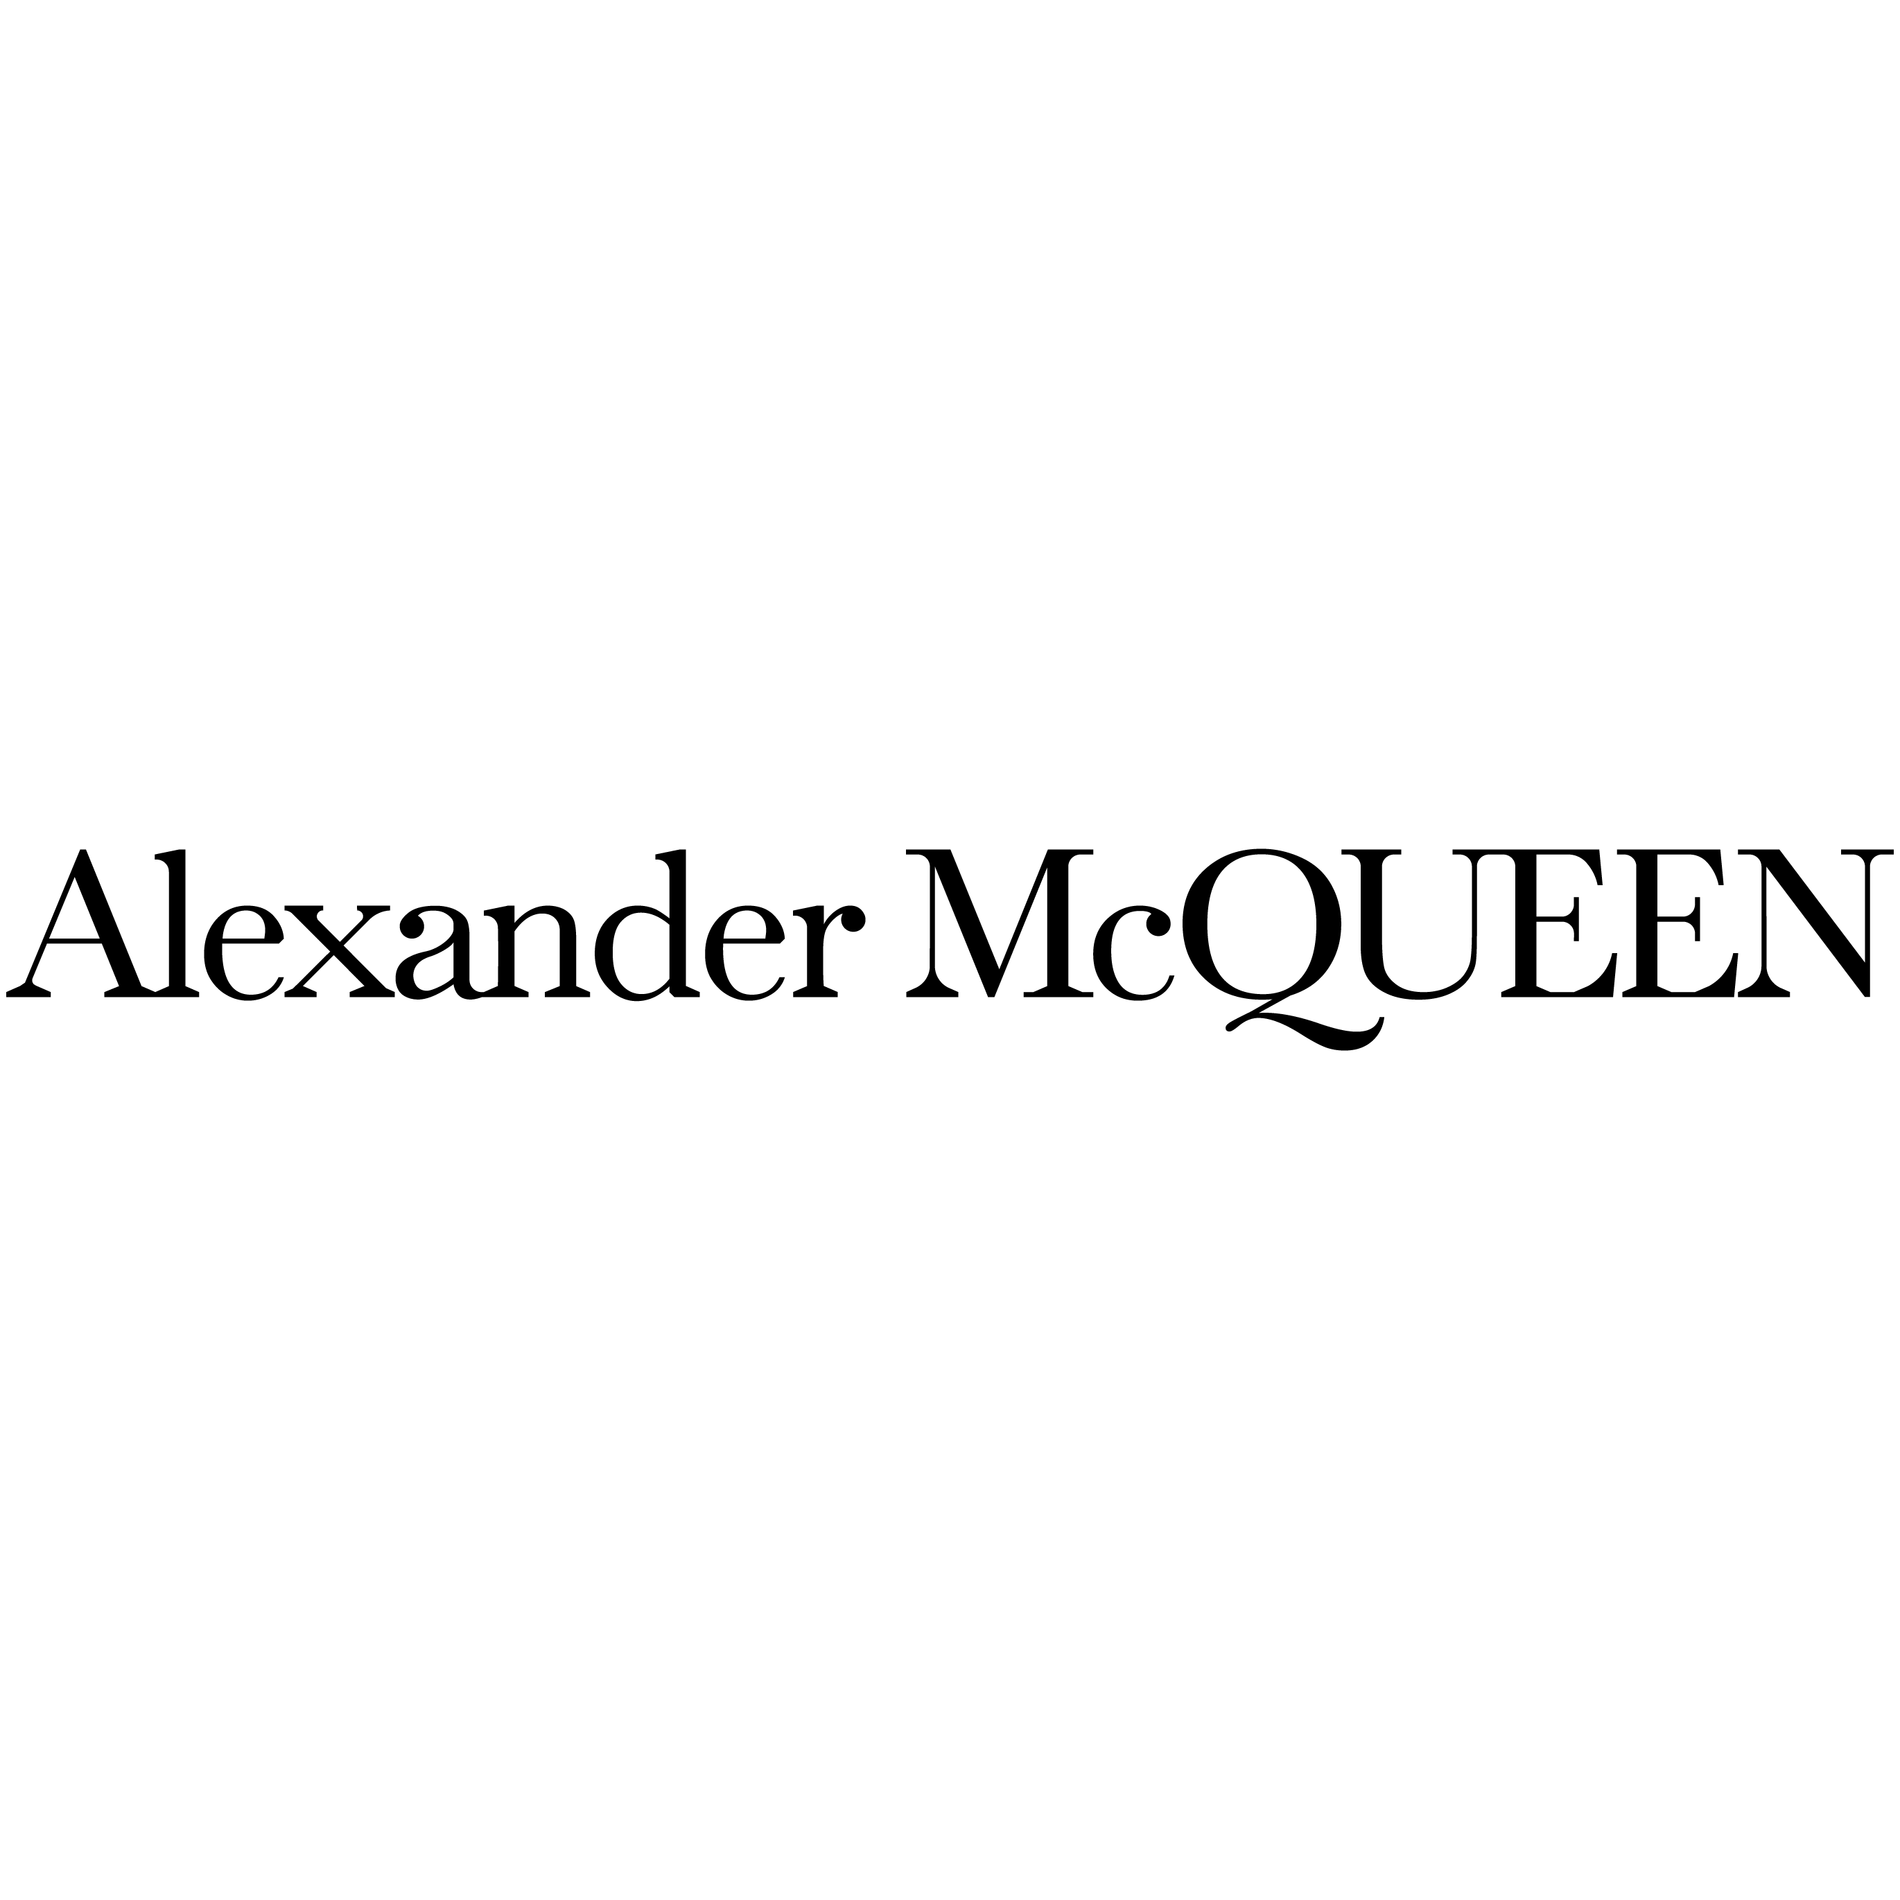 Alexander McQueen Photo